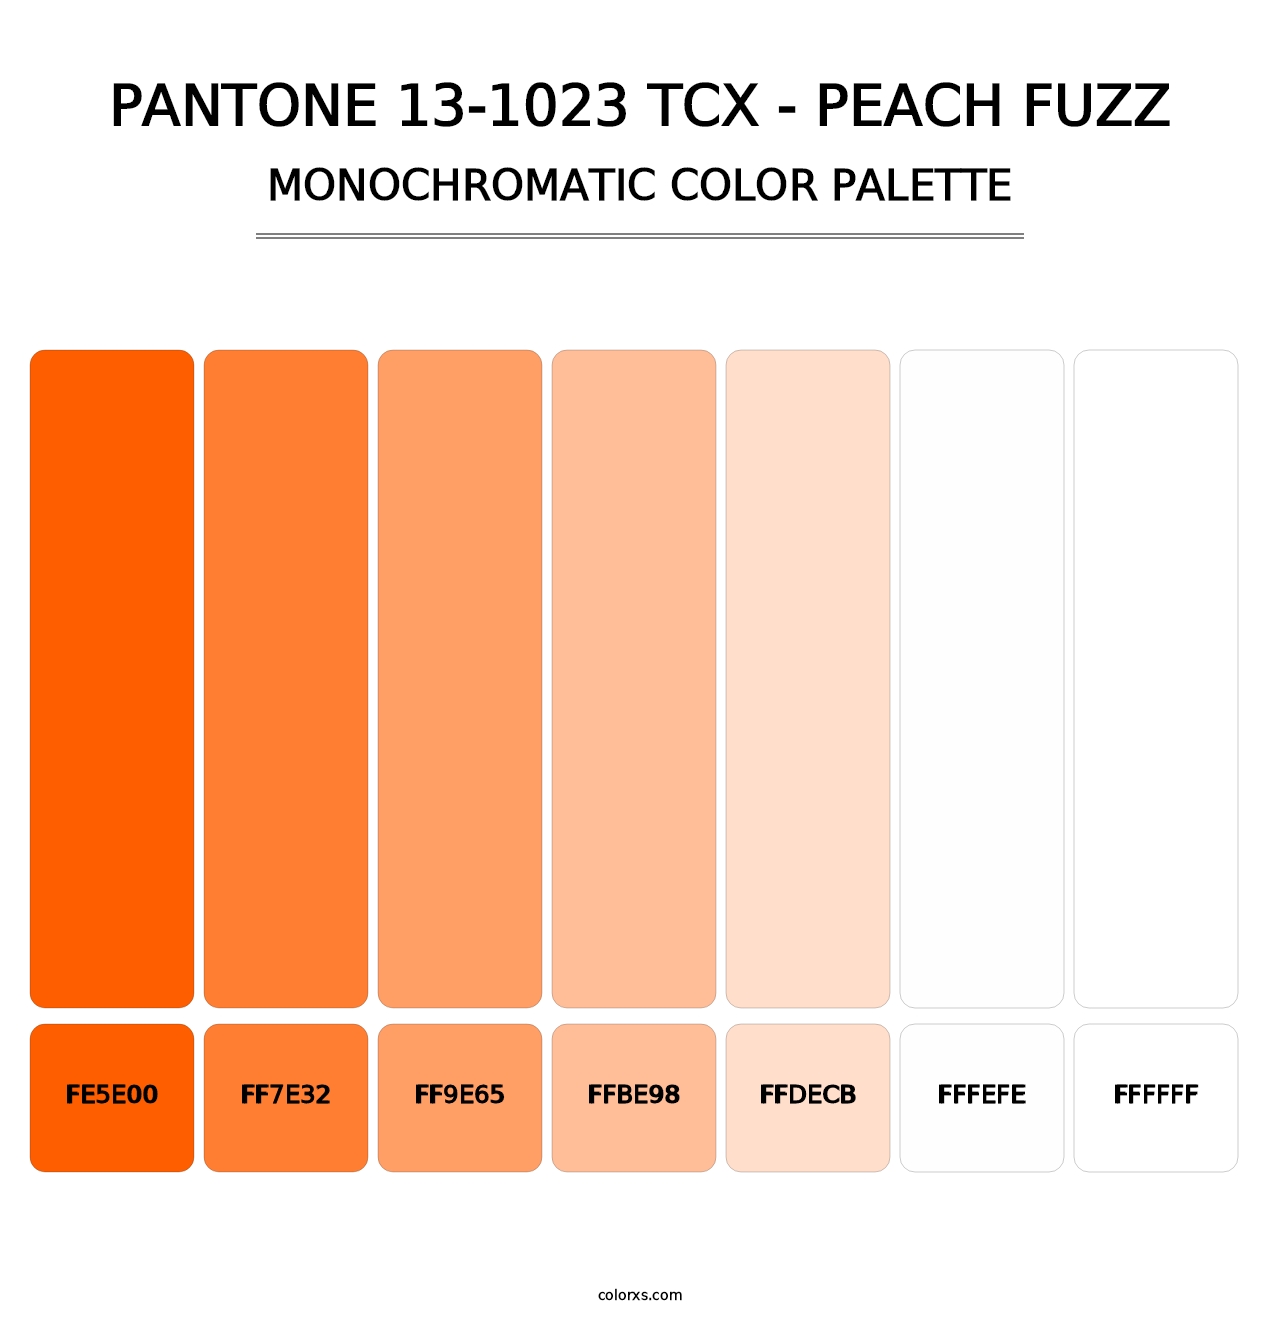 PANTONE 13-1023 TCX - Peach Fuzz - Monochromatic Color Palette